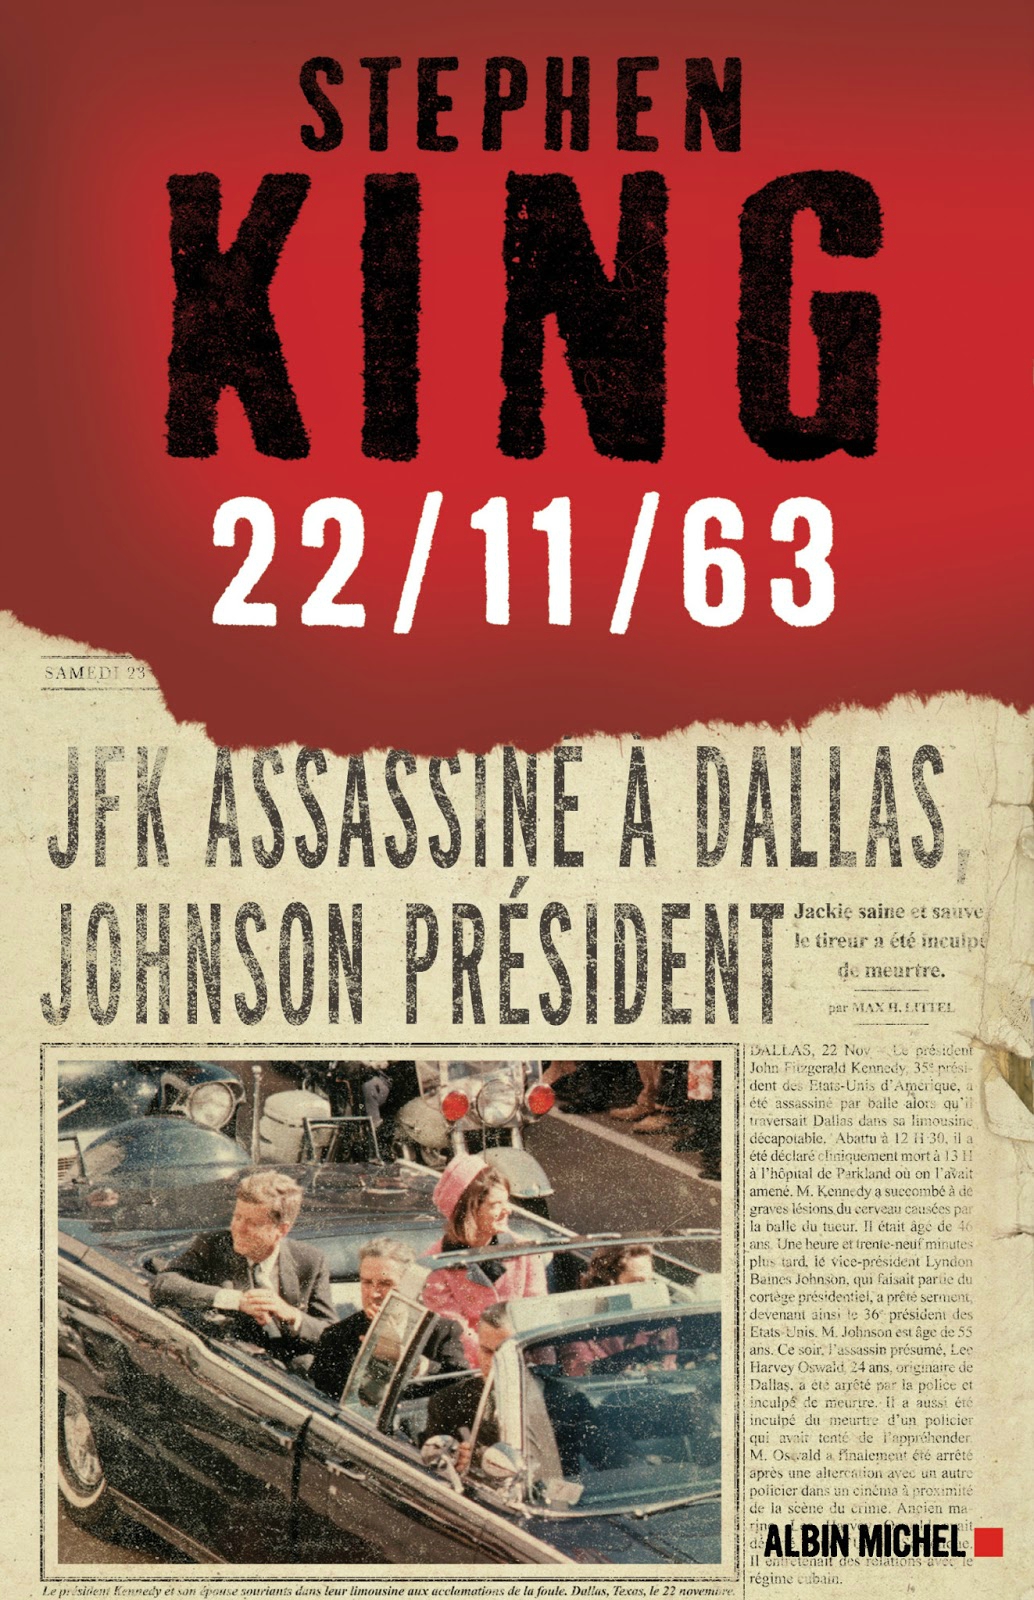 11/22/63 - 11/22/63, le roman de Stephen King adapté par J.J. Abrams 22 11 63